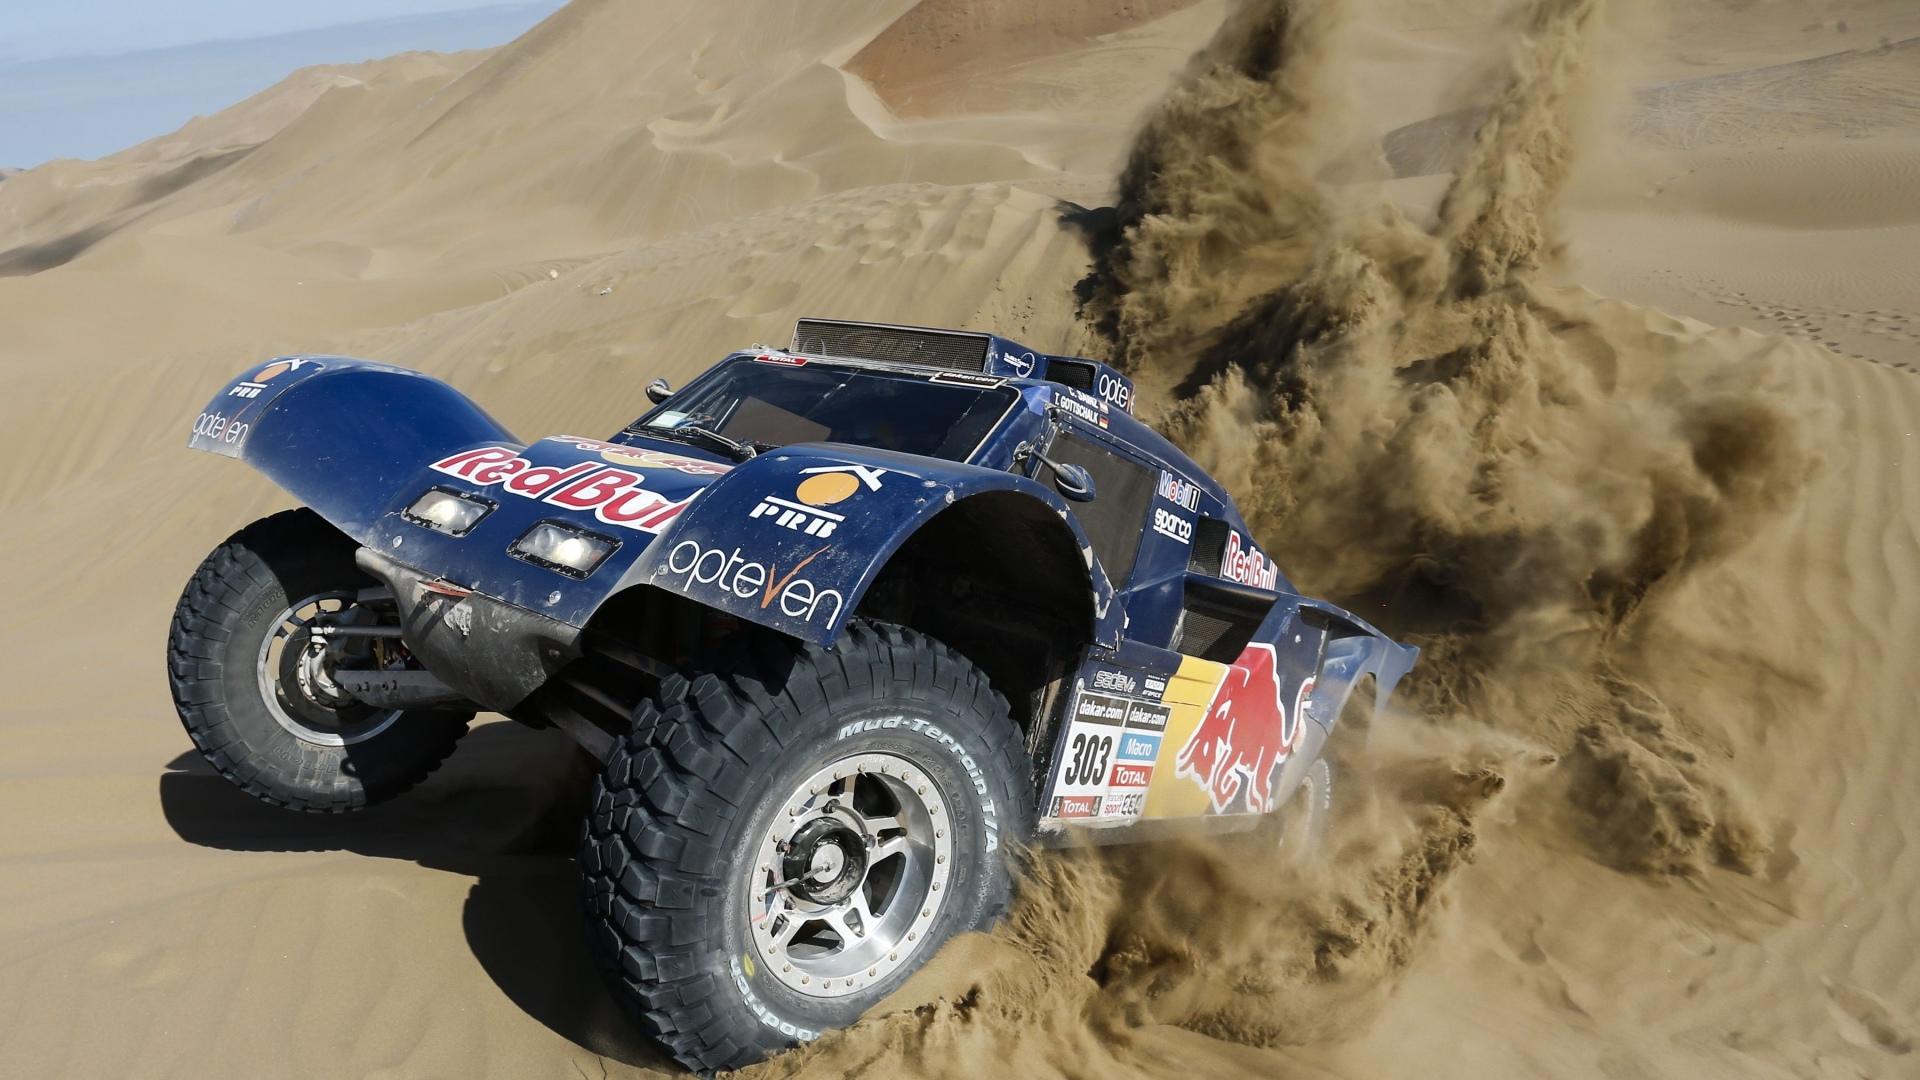 Dakar Wallpapers Hd Quality - Dakar Rally , HD Wallpaper & Backgrounds